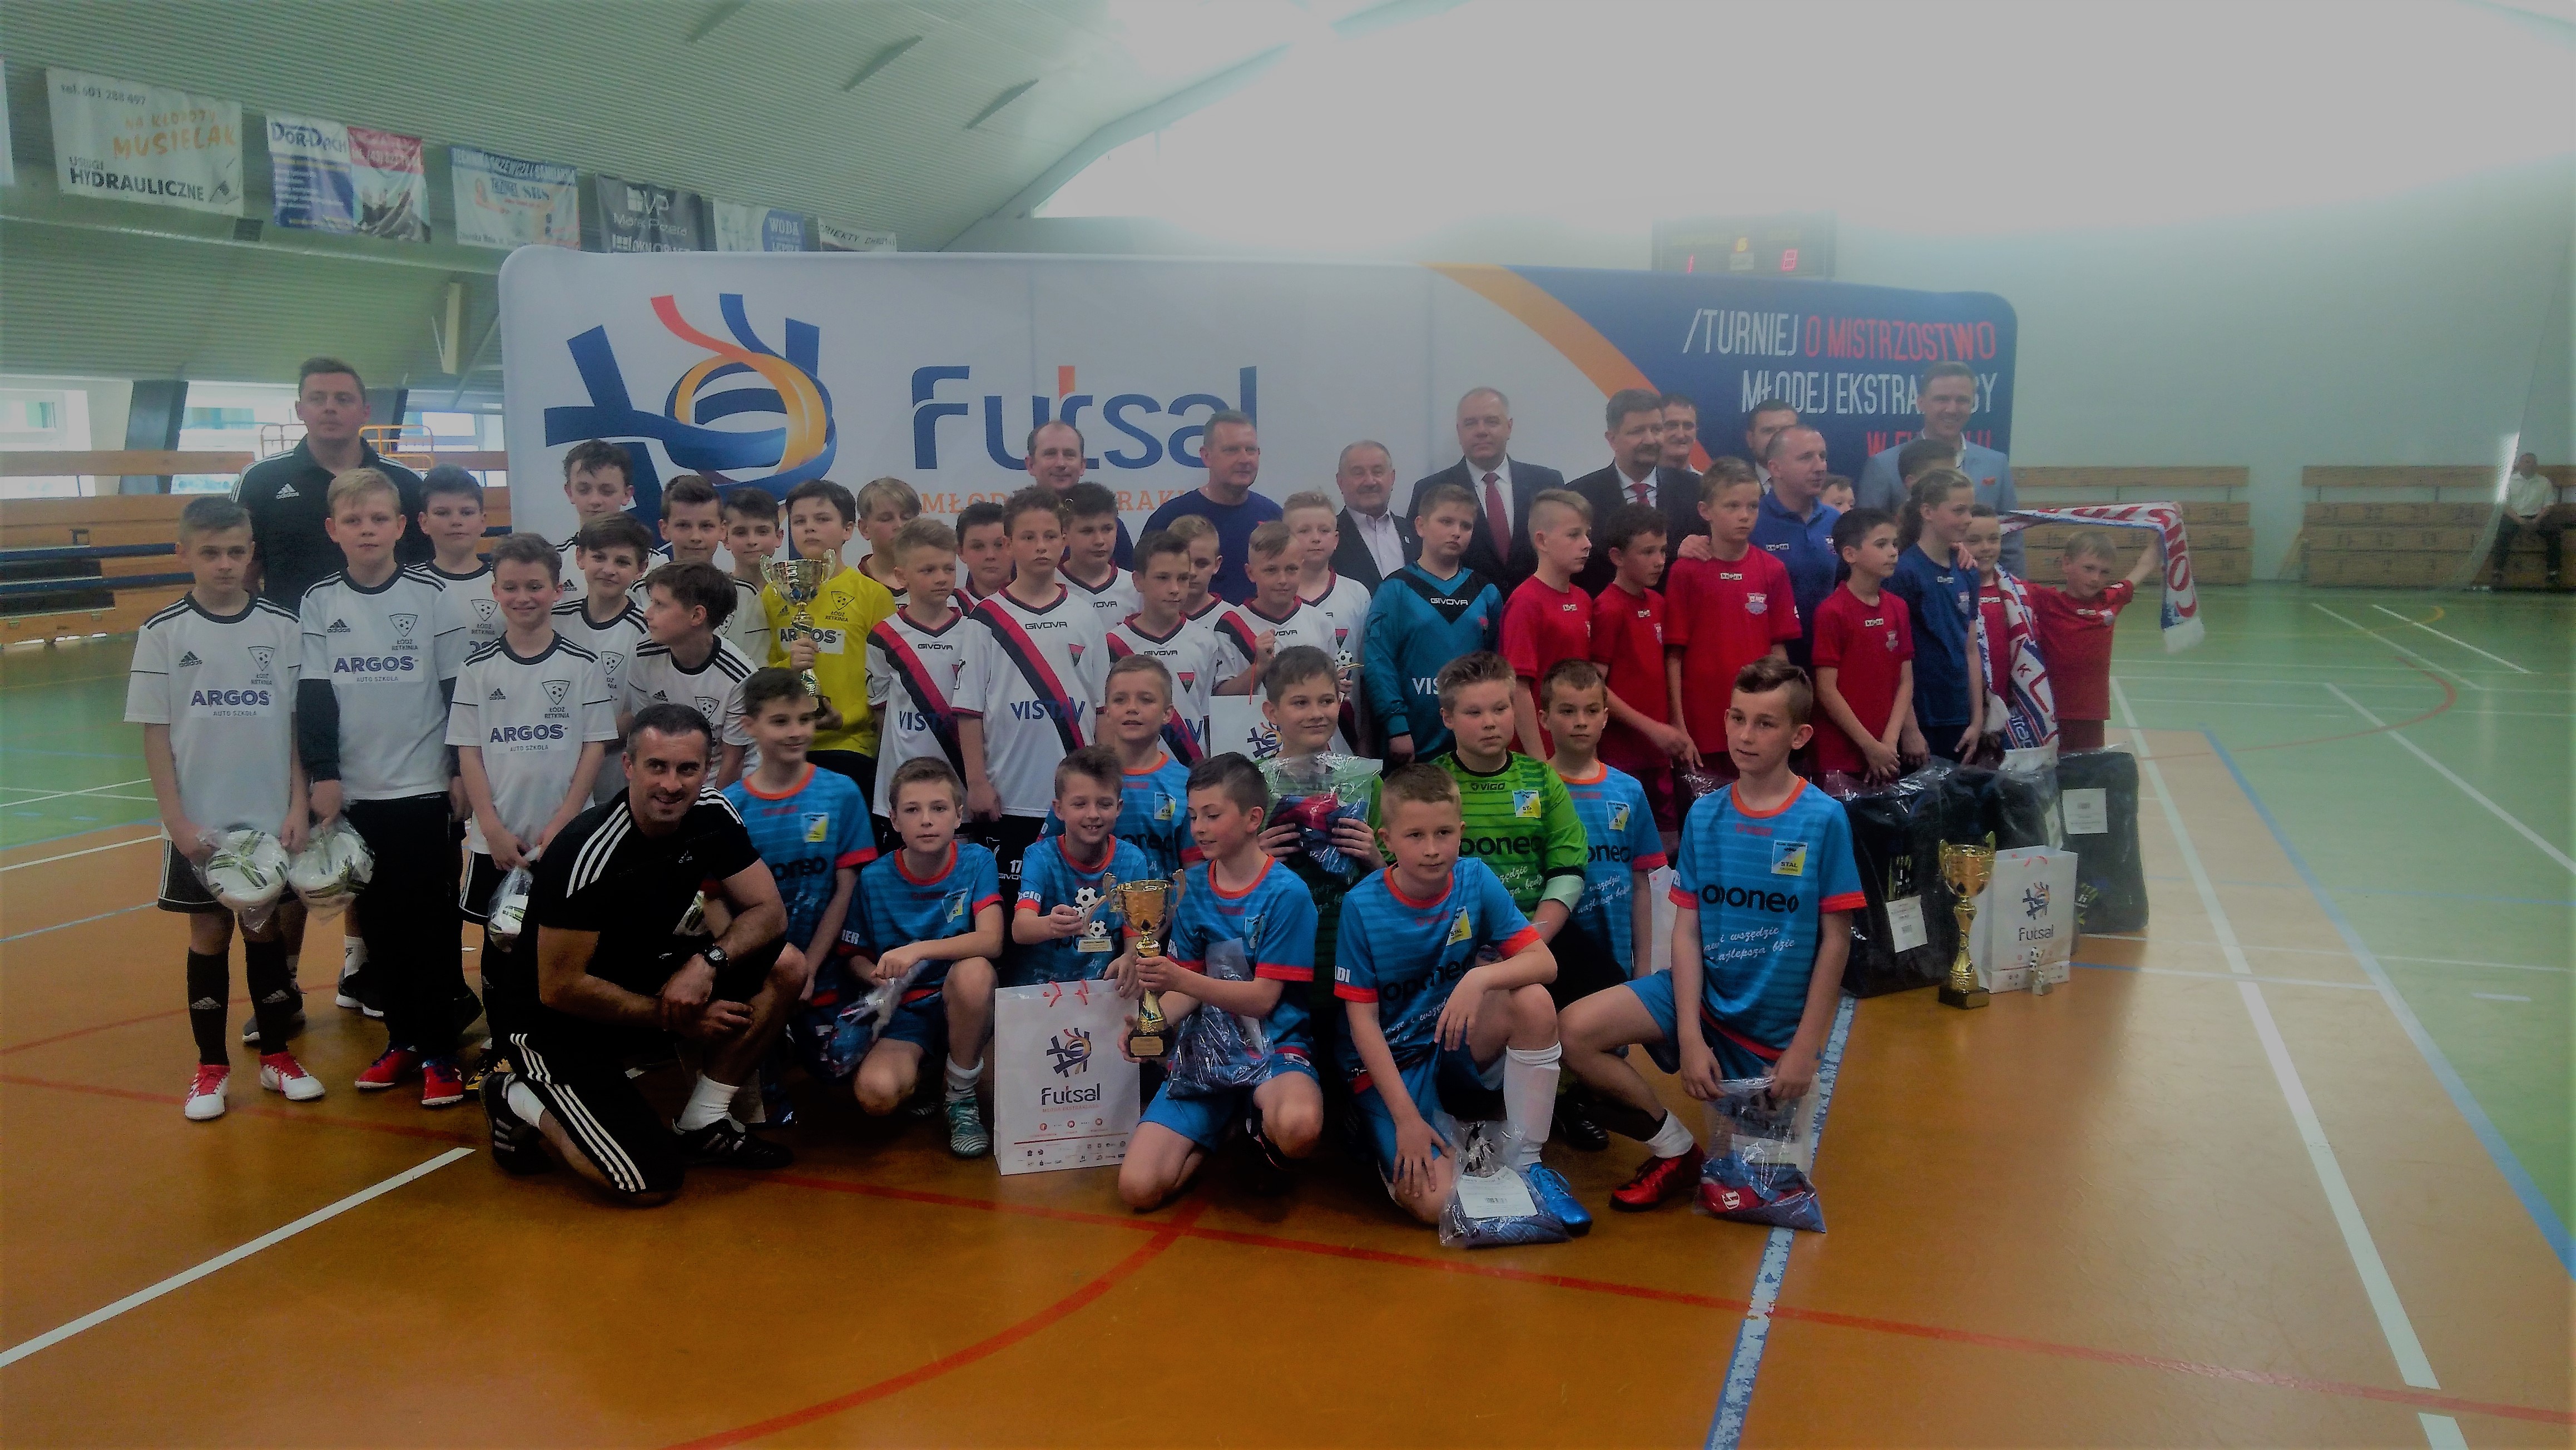 Finałowy turniej Młodej Ekstraklasy w futsalu. W Zduńskiej Woli oglądaliśmy piękne gole i efektowne zwycięstwa